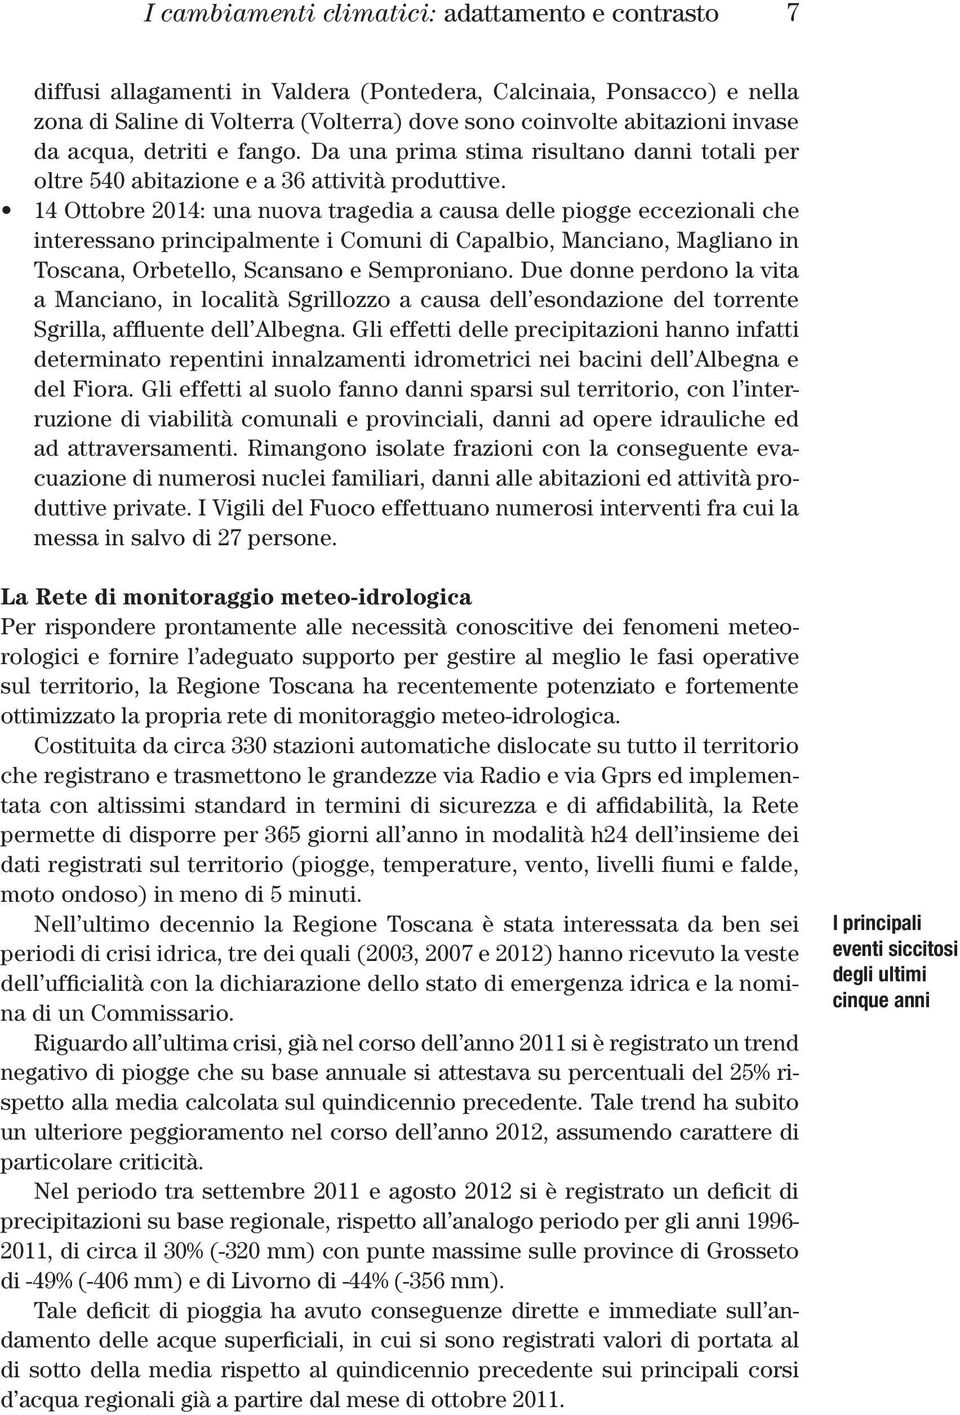 14 Ottobre 2014: una nuova tragedia a causa delle piogge eccezionali che interessano principalmente i Comuni di Capalbio, Manciano, Magliano in Toscana, Orbetello, Scansano e Semproniano.